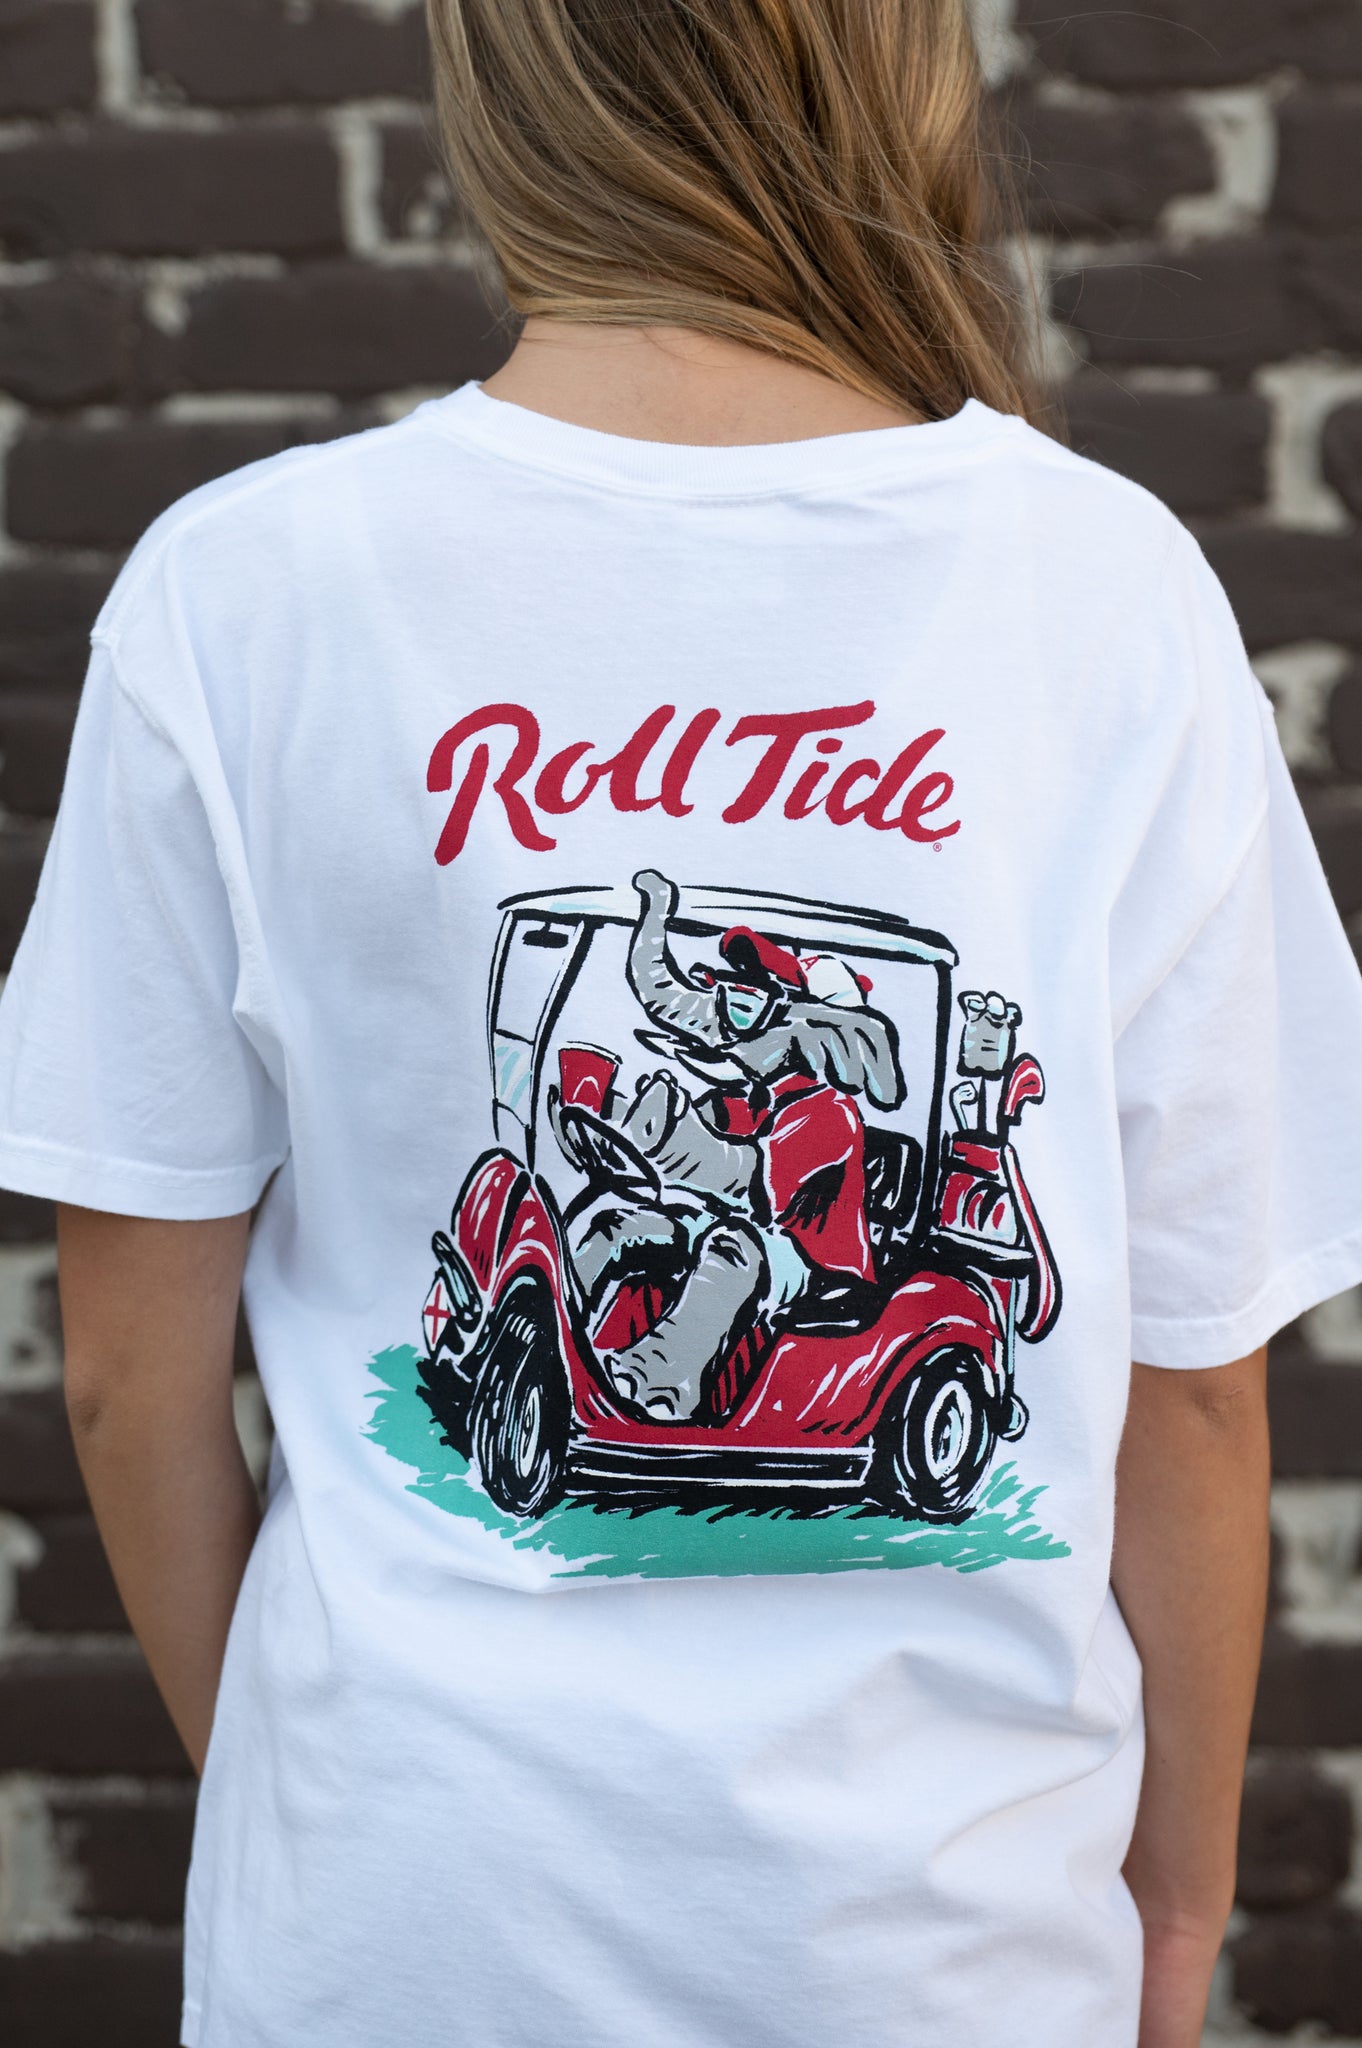 Big Al Golf Cart T-Shirt